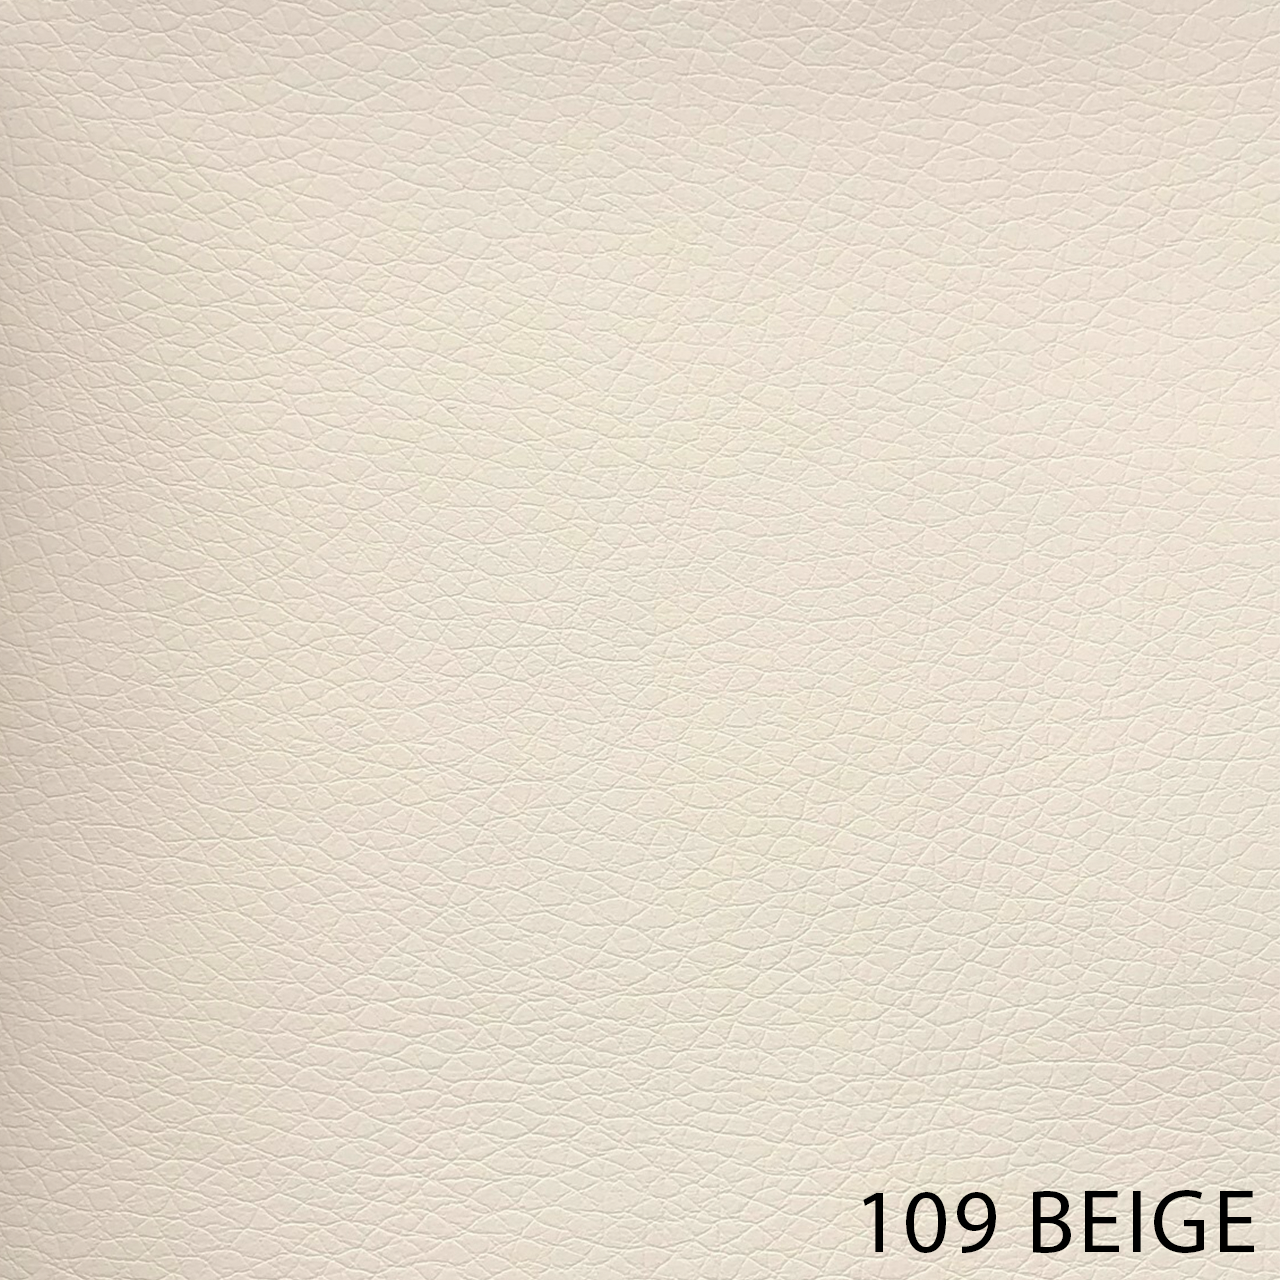 109 BEIGE 